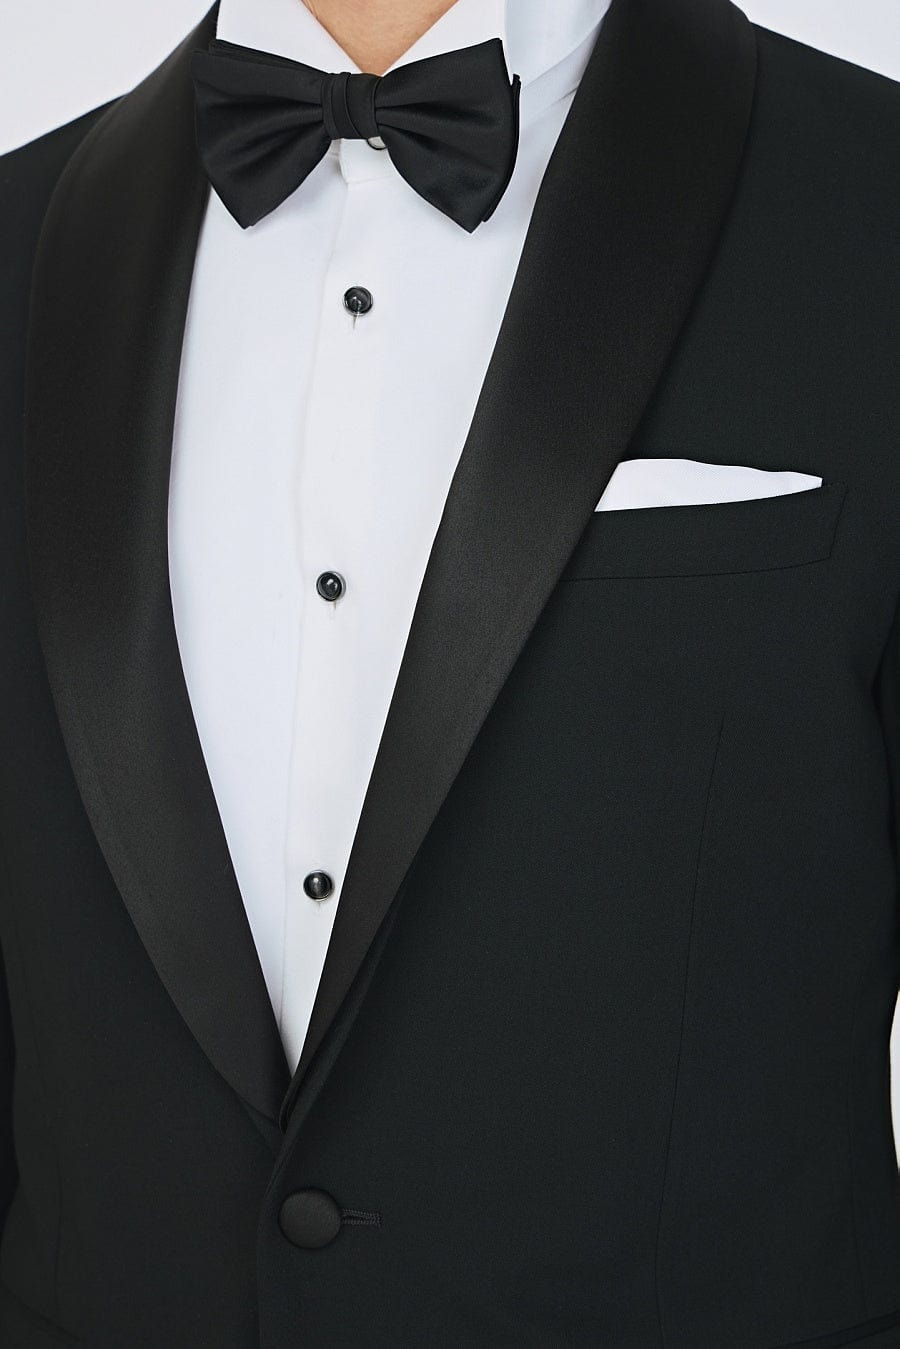 aesido Business Casual Black Shawl Lapel Men's Suit (Blazer+Pants)